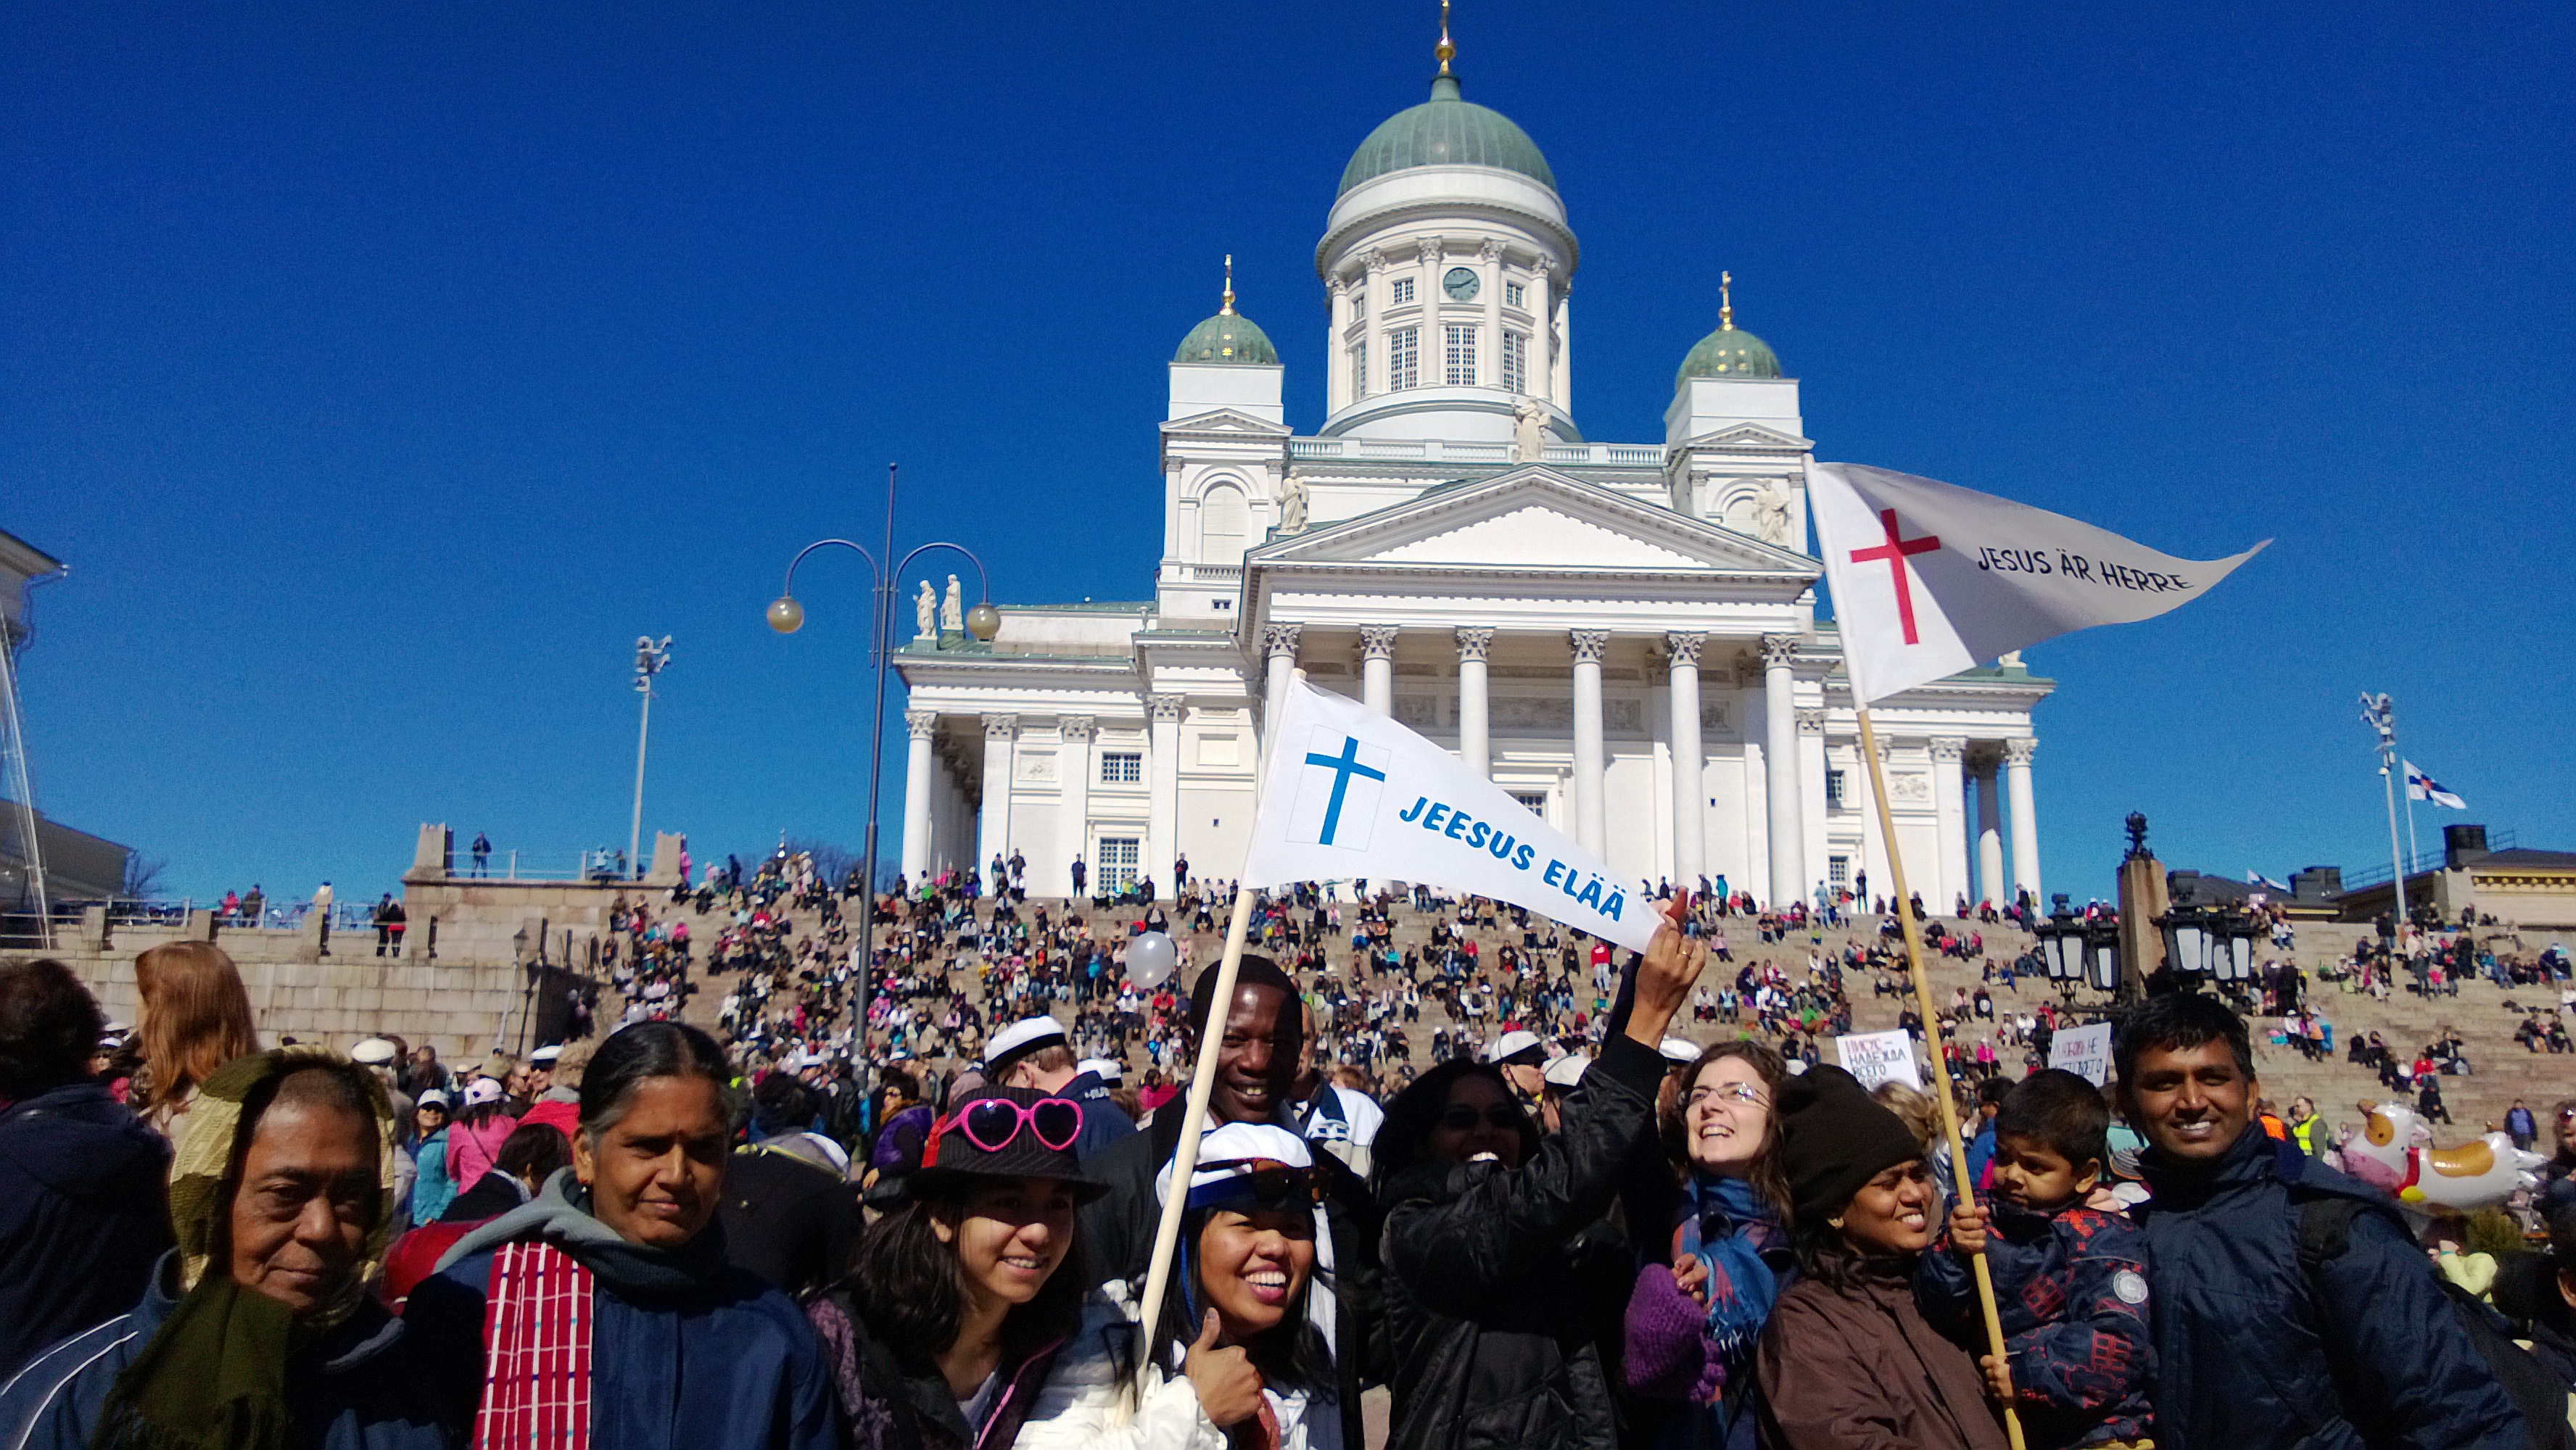 Kristillinen vapputapahtuma valtasi Helsingin Senaatintorin -  Seurakuntalainen